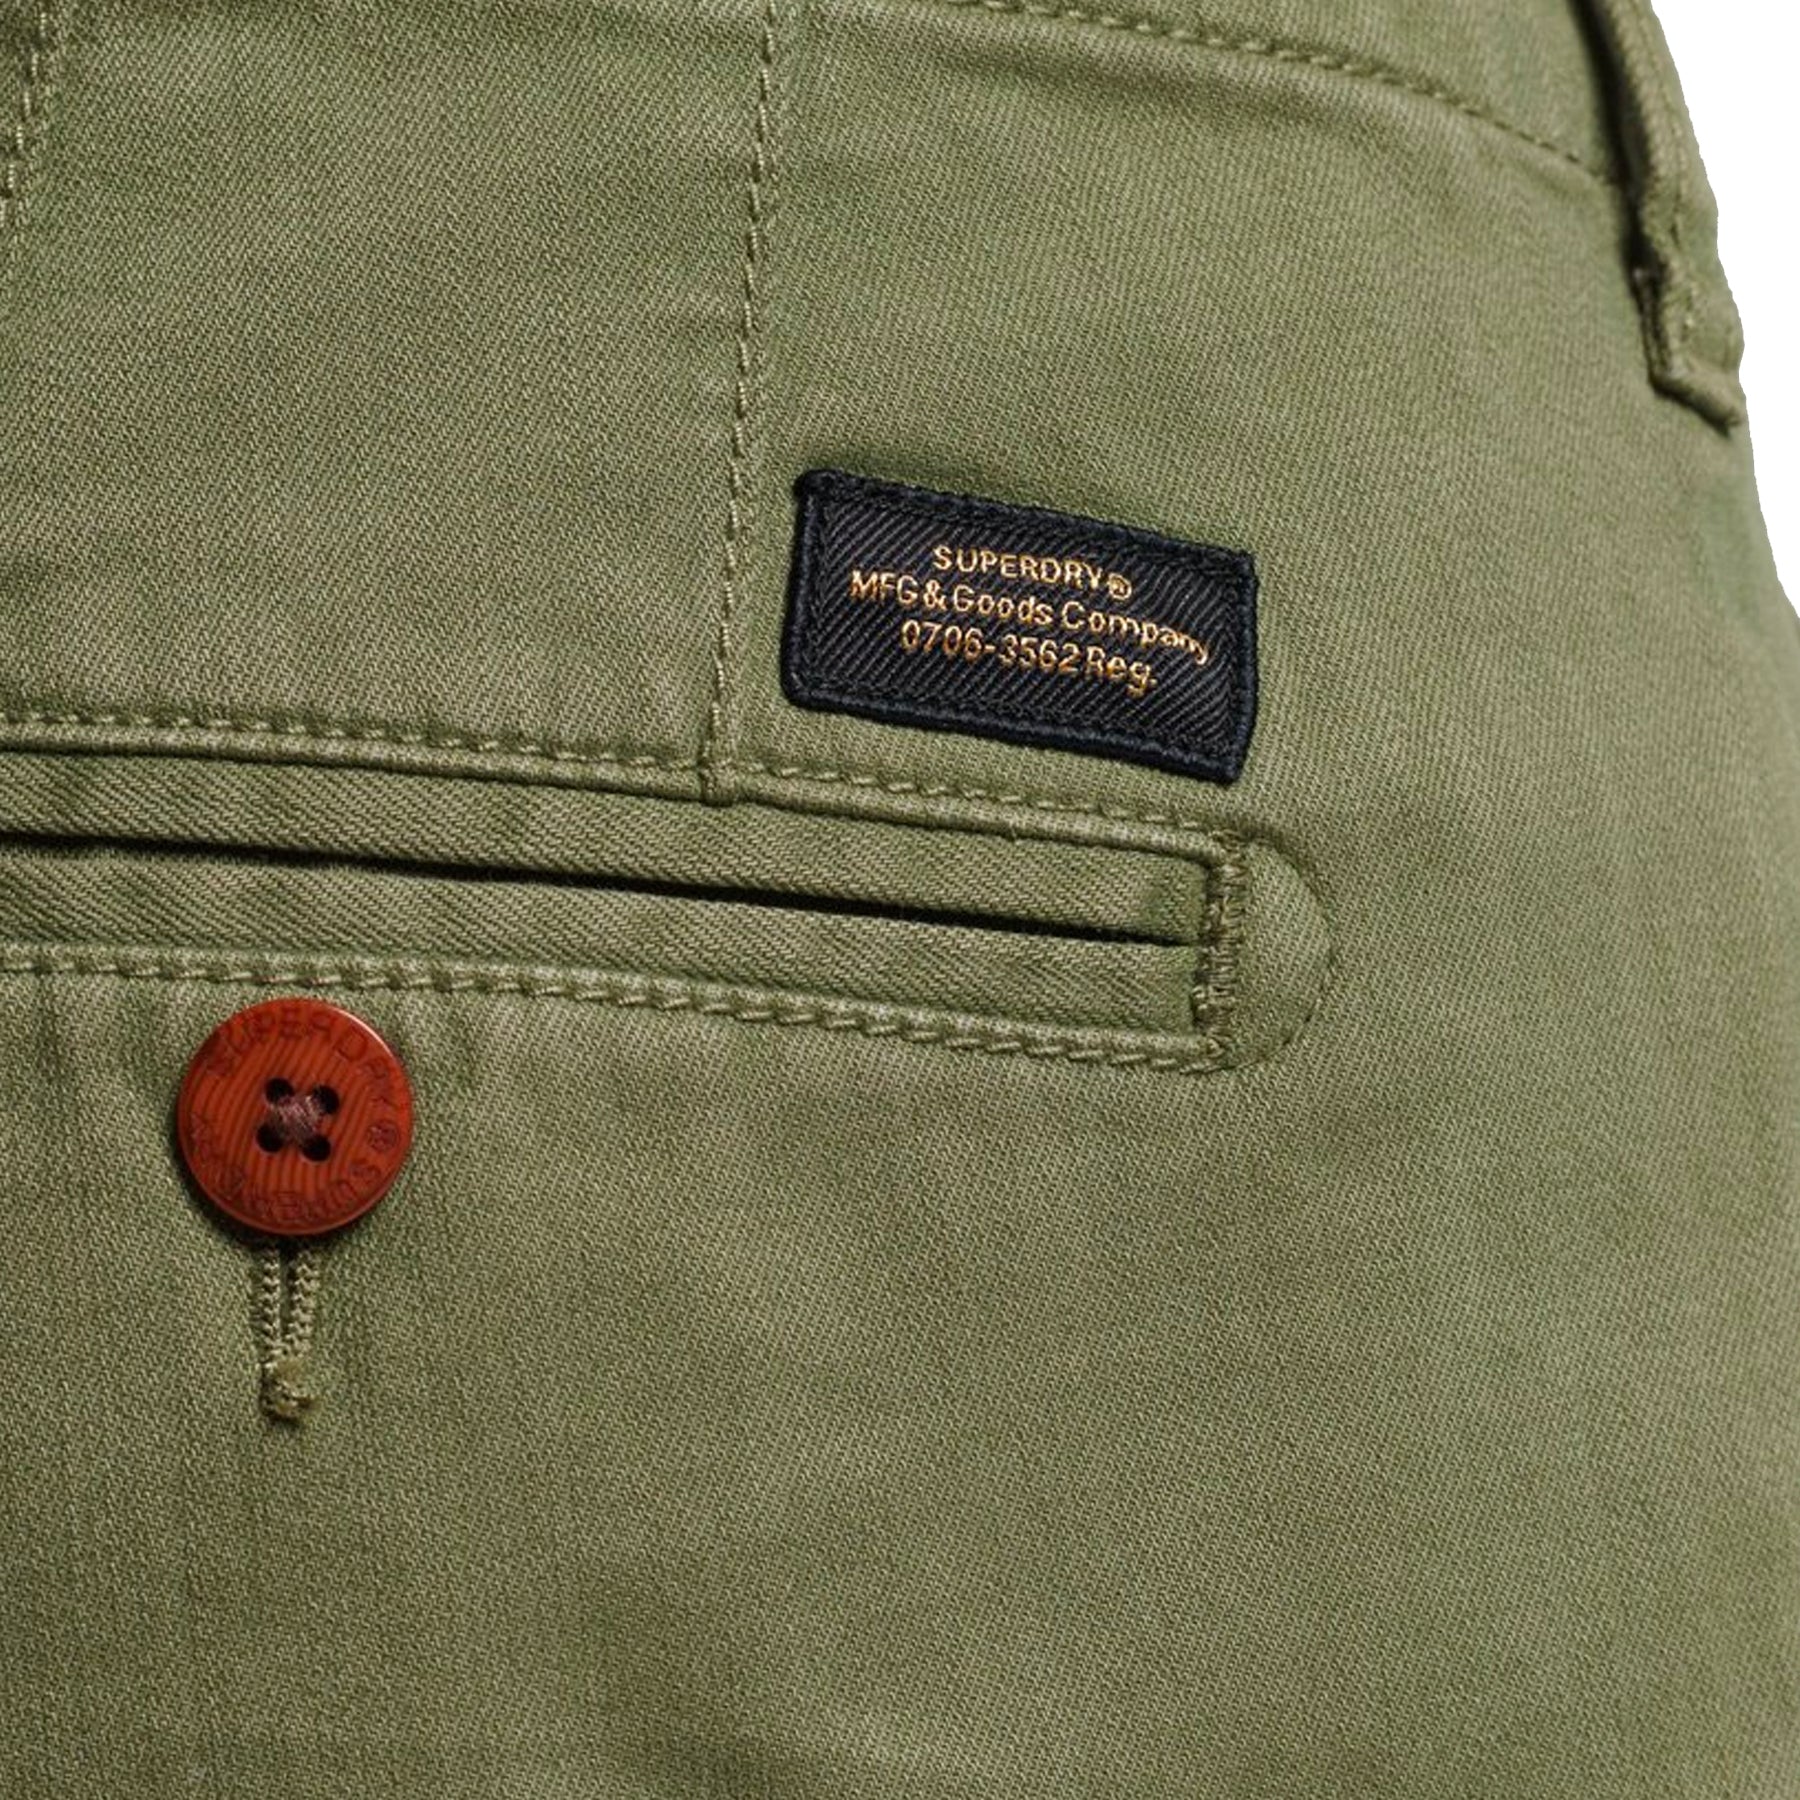 Superdry Vintage Officer Chino Shorts - Olive Khaki